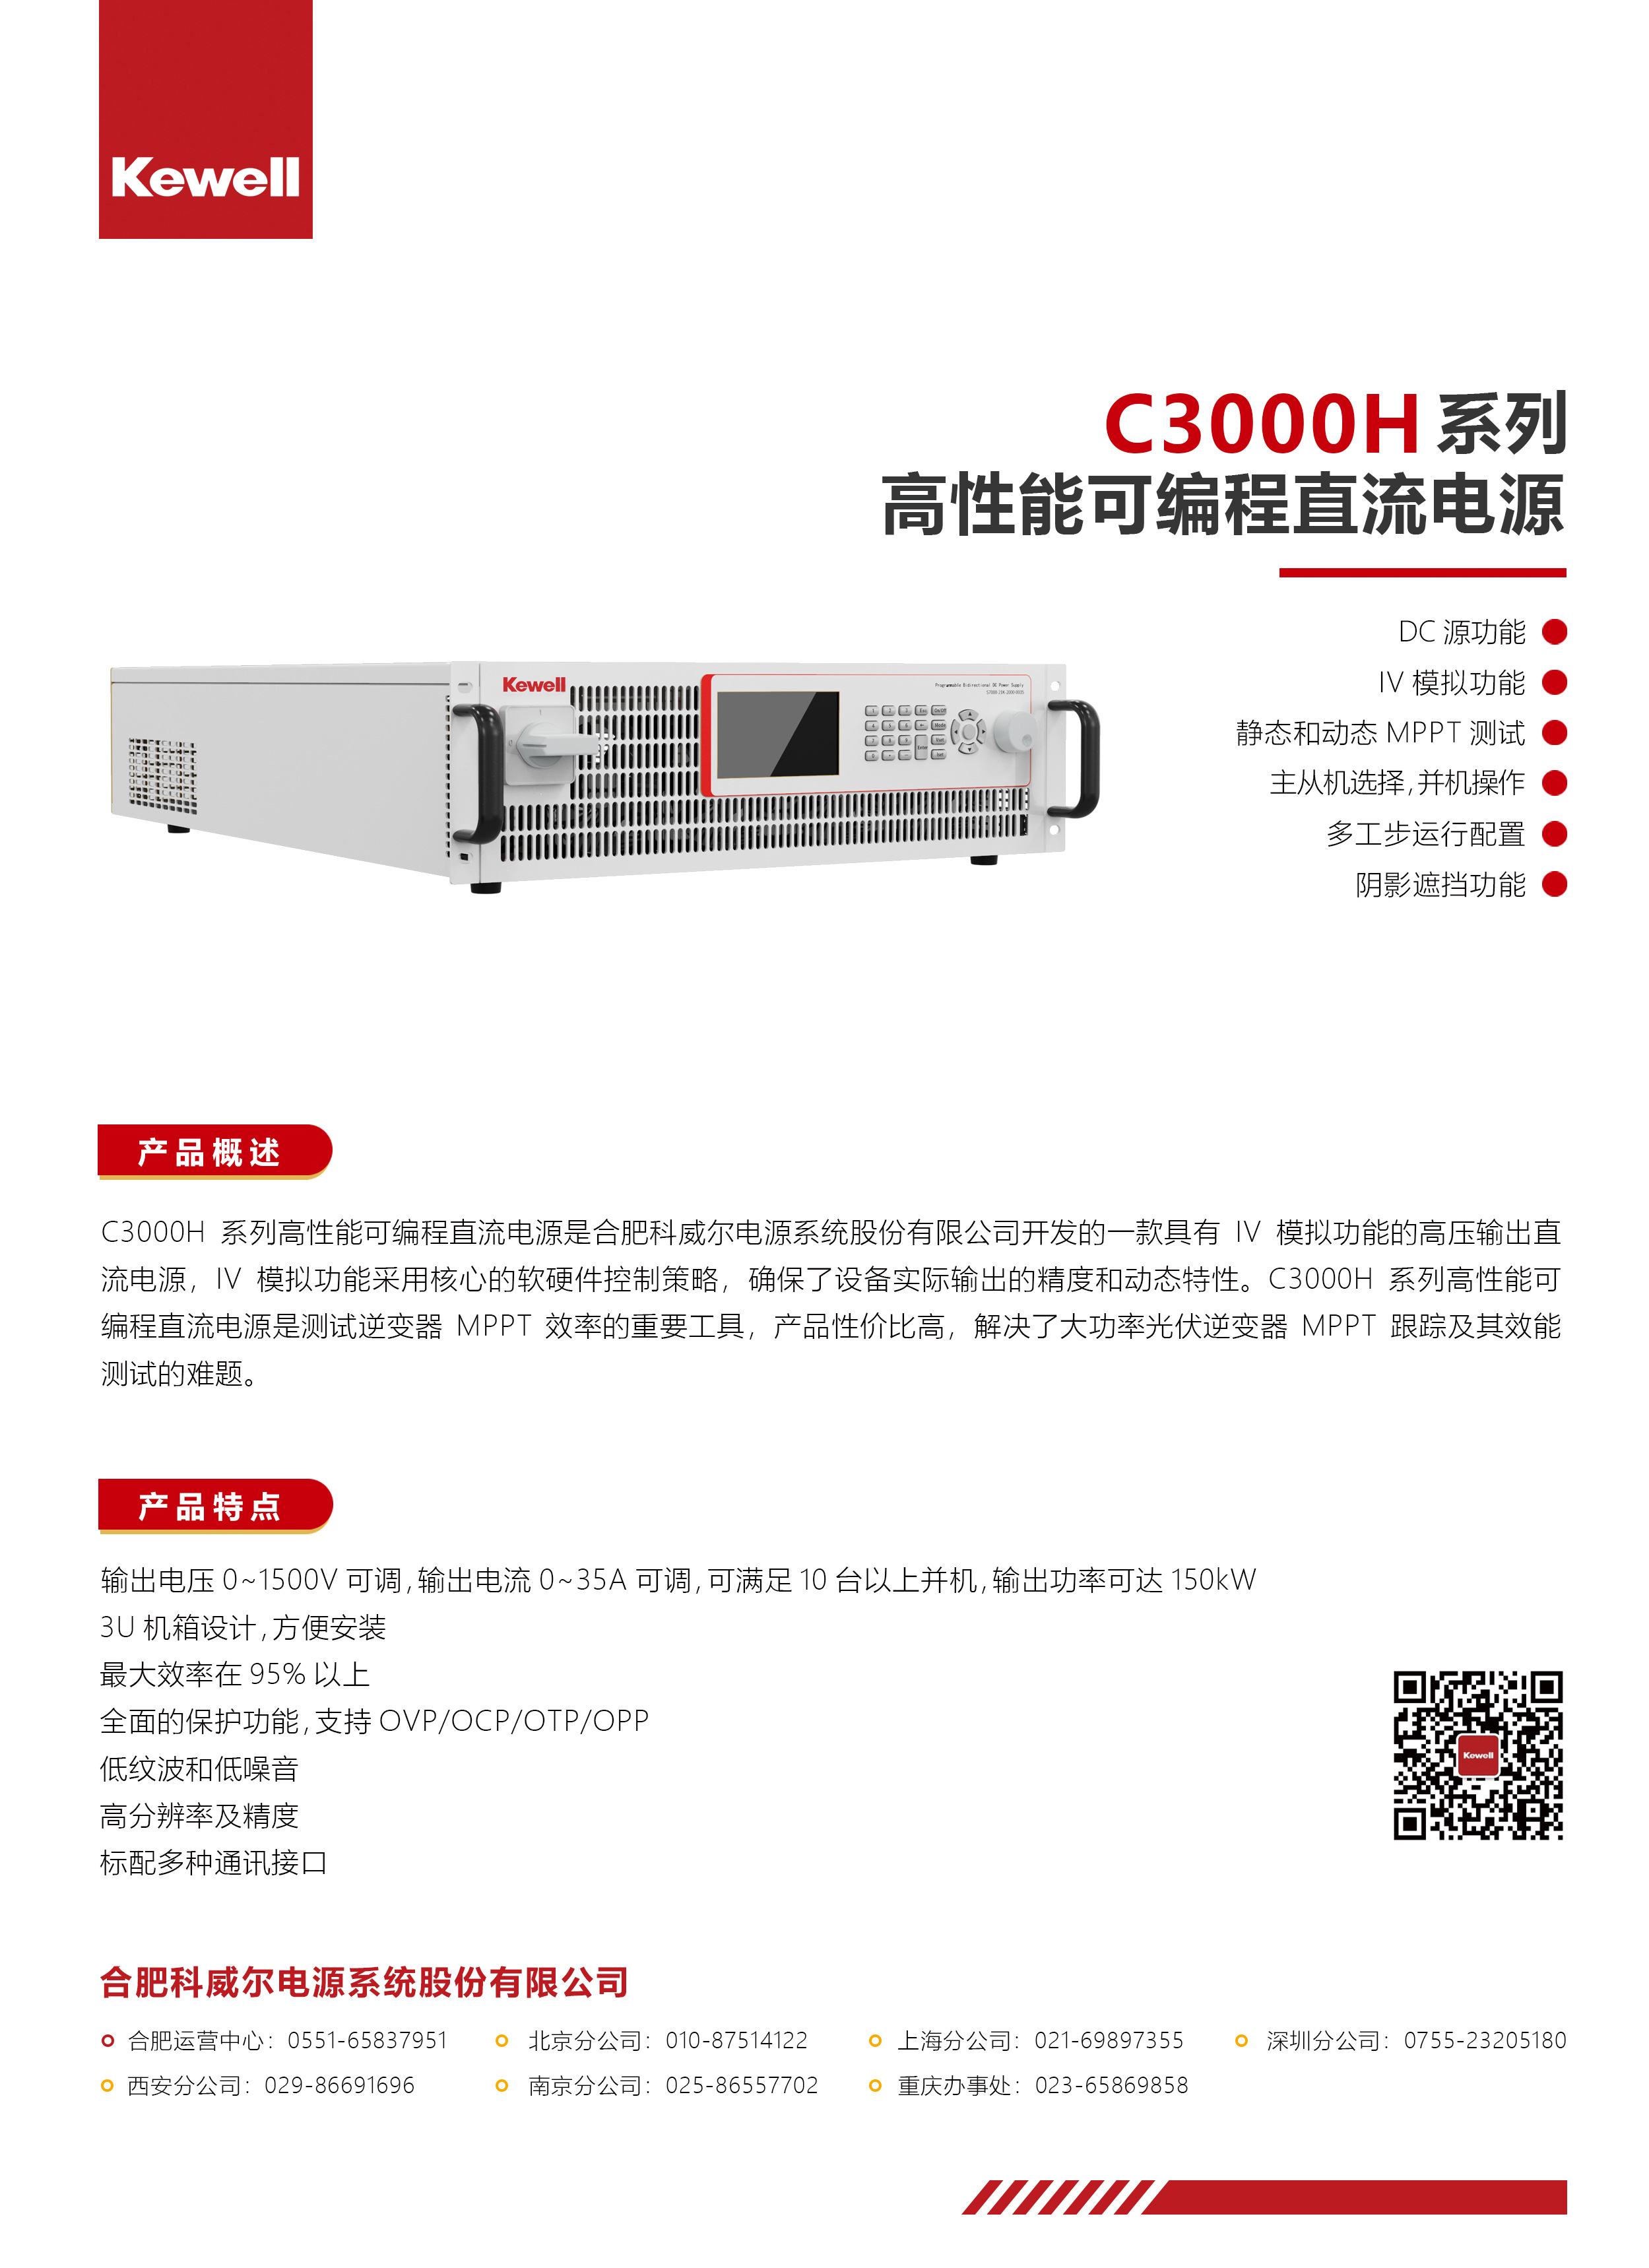 C3000系列高性能可编程直流电源